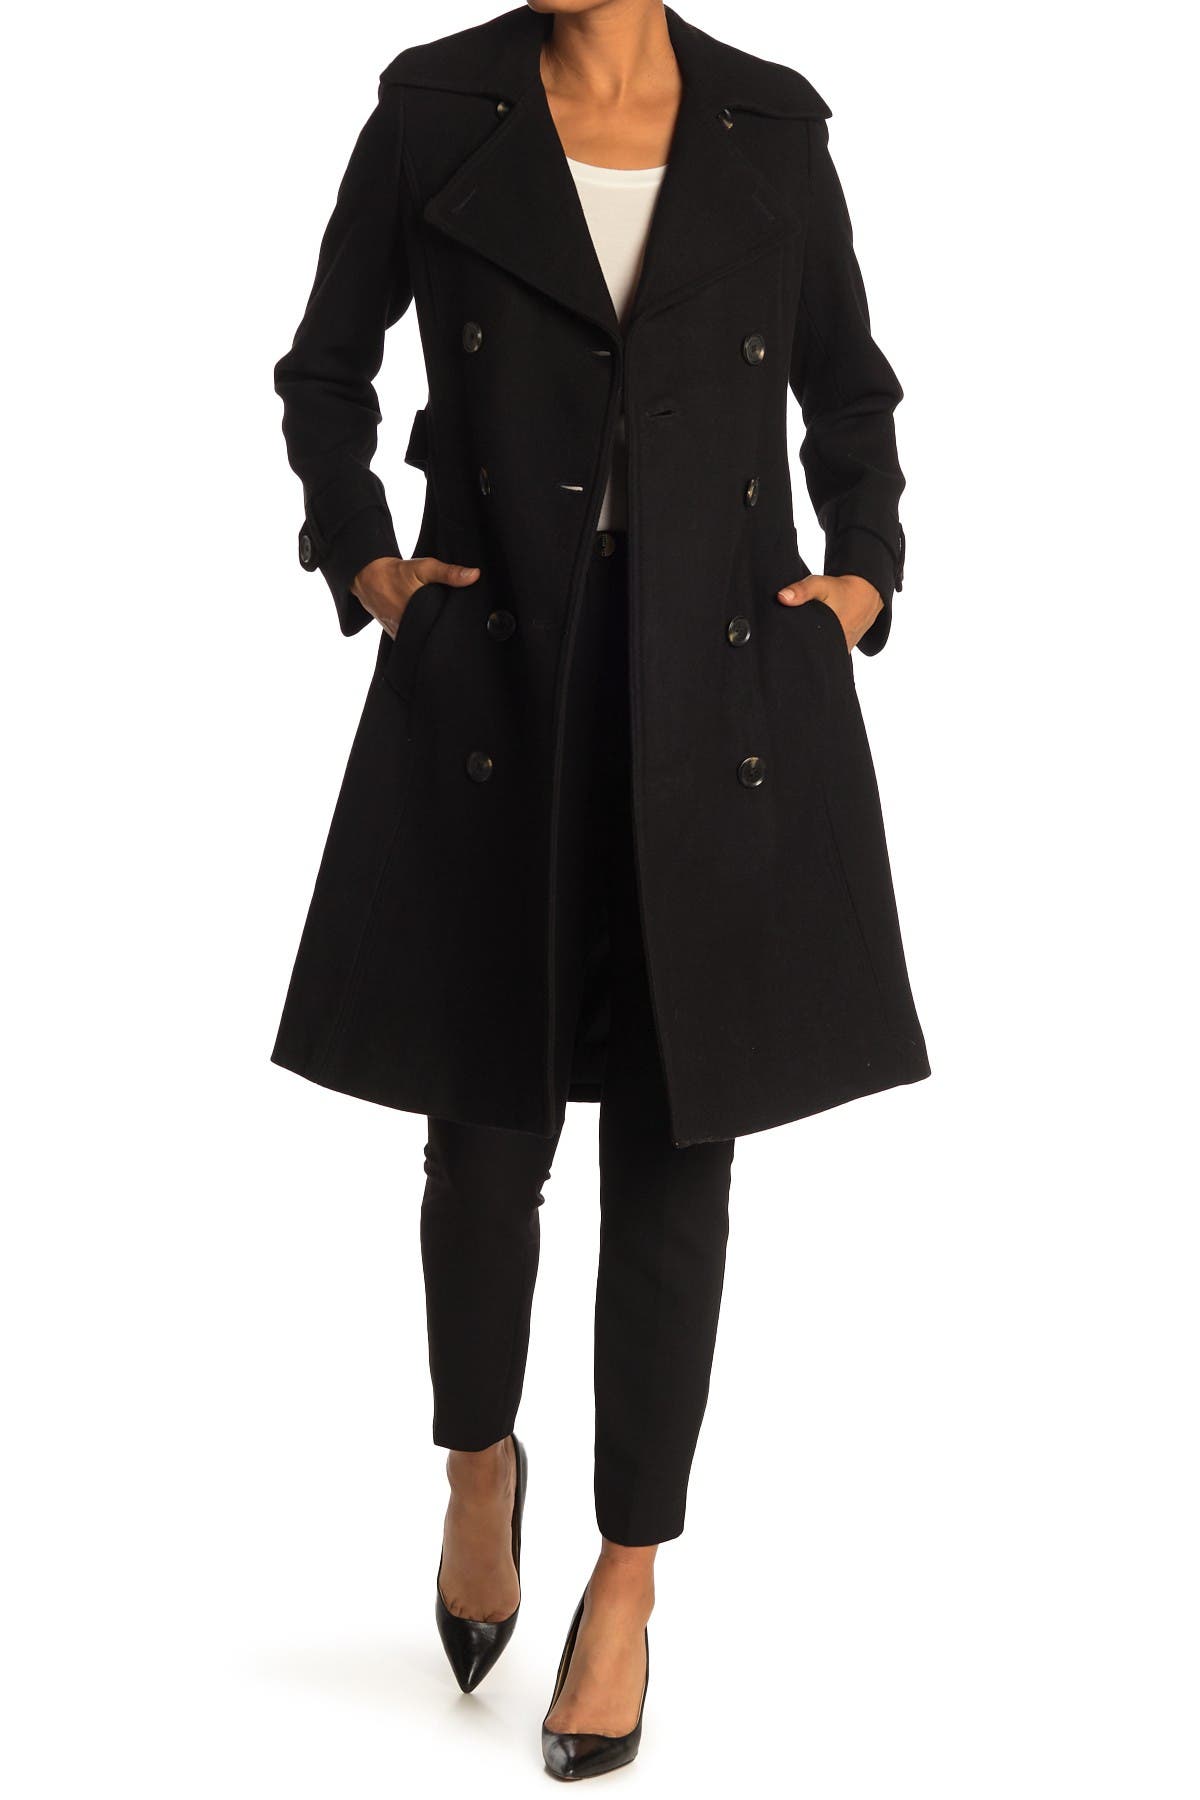 michael kors black wool coat